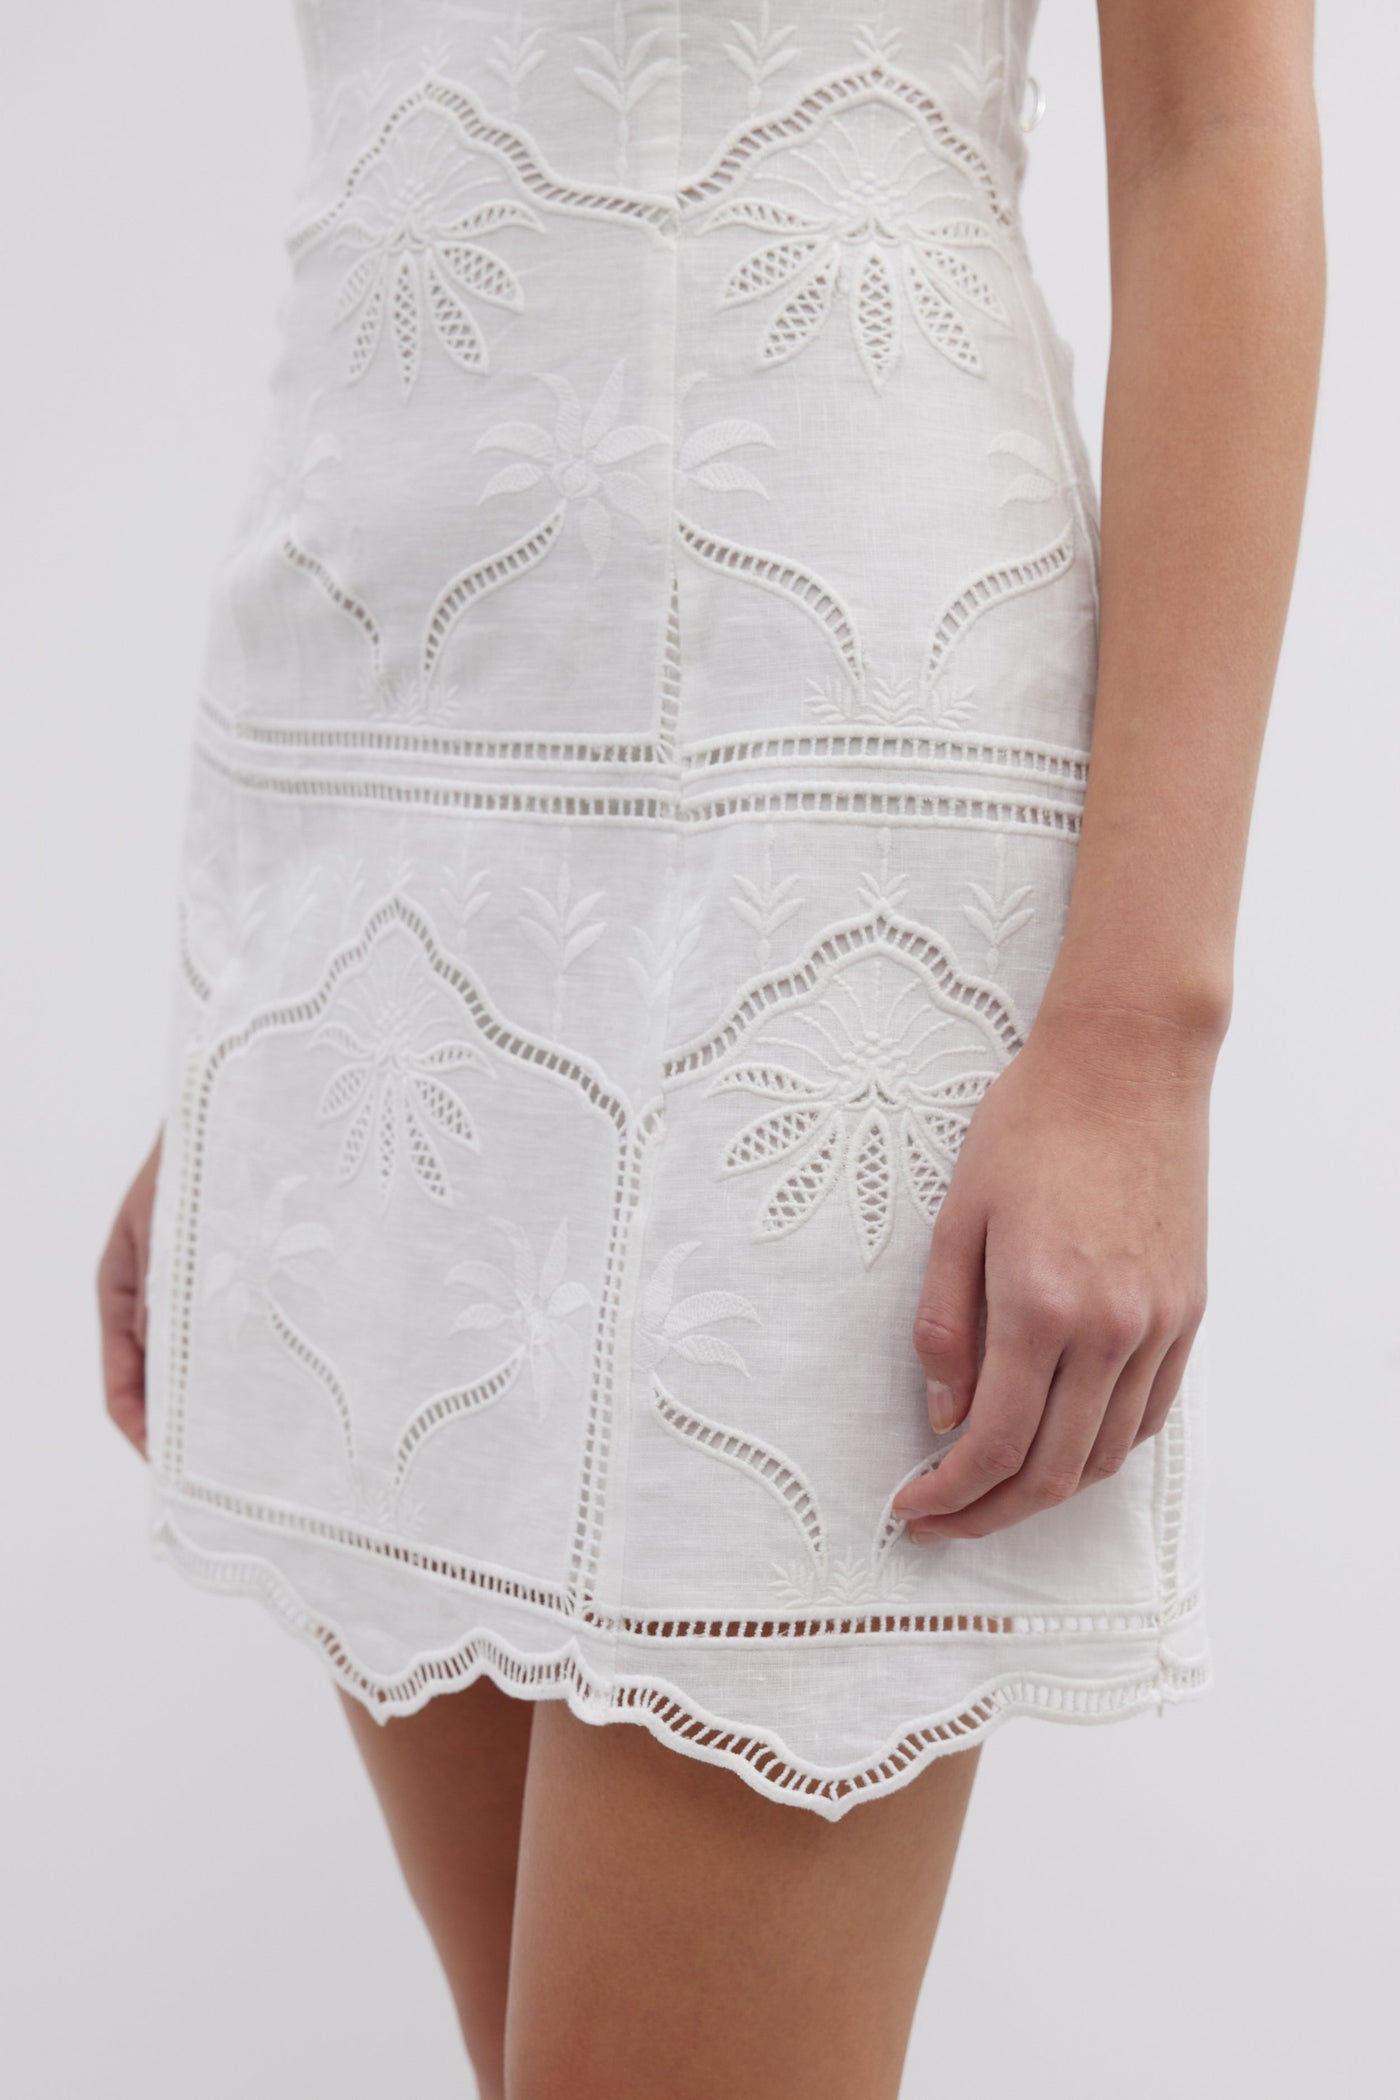 BONITA STRAPLESS DRESS - WHITE